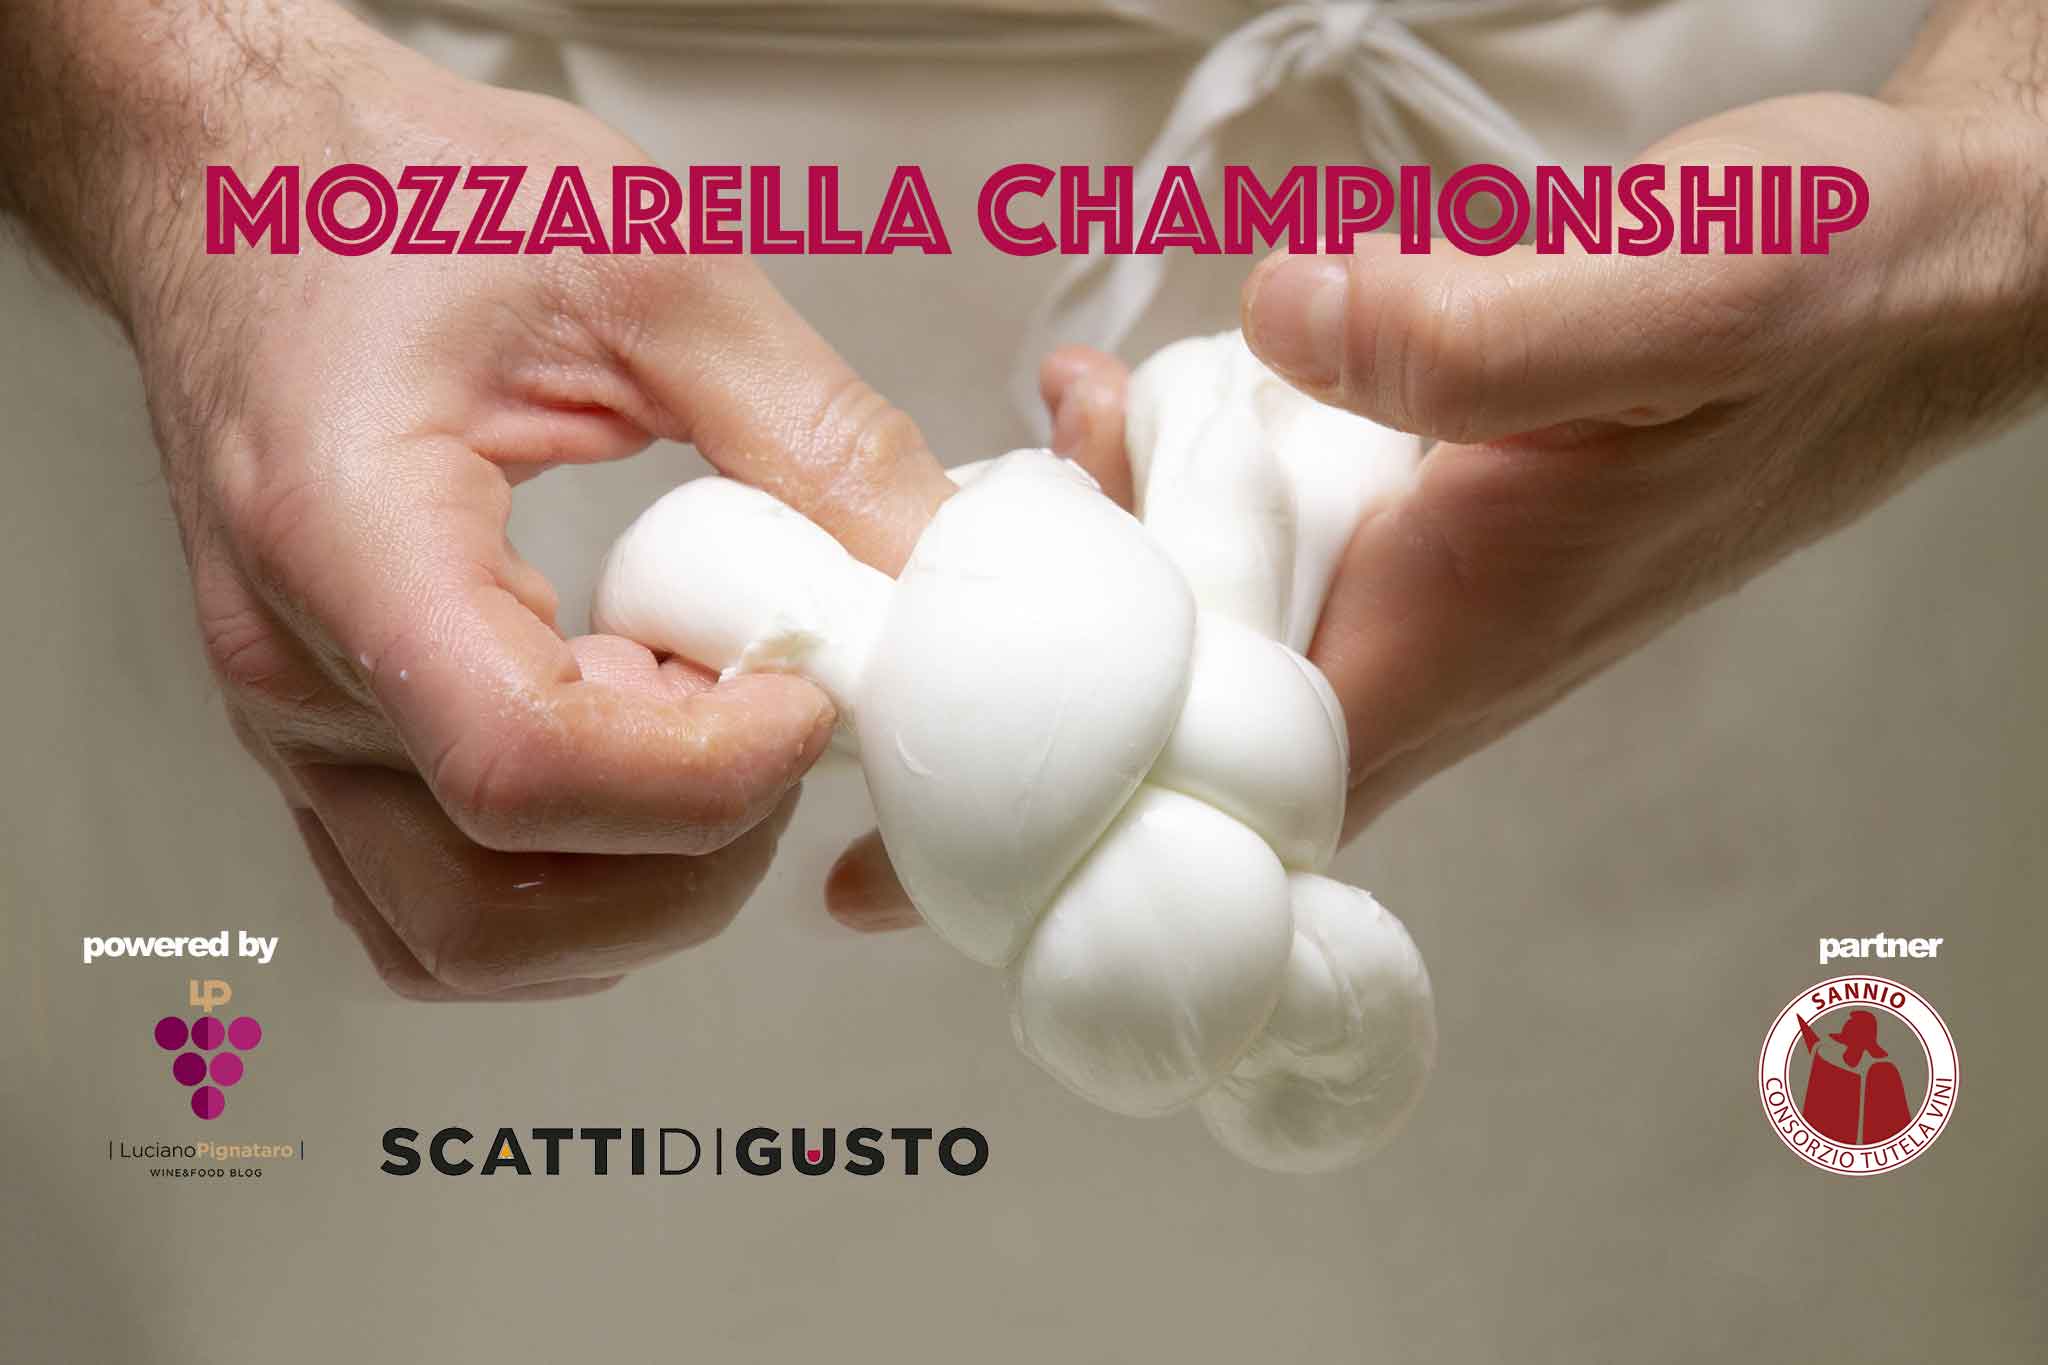 Mozzarella Championship Campionato della Mozzarella